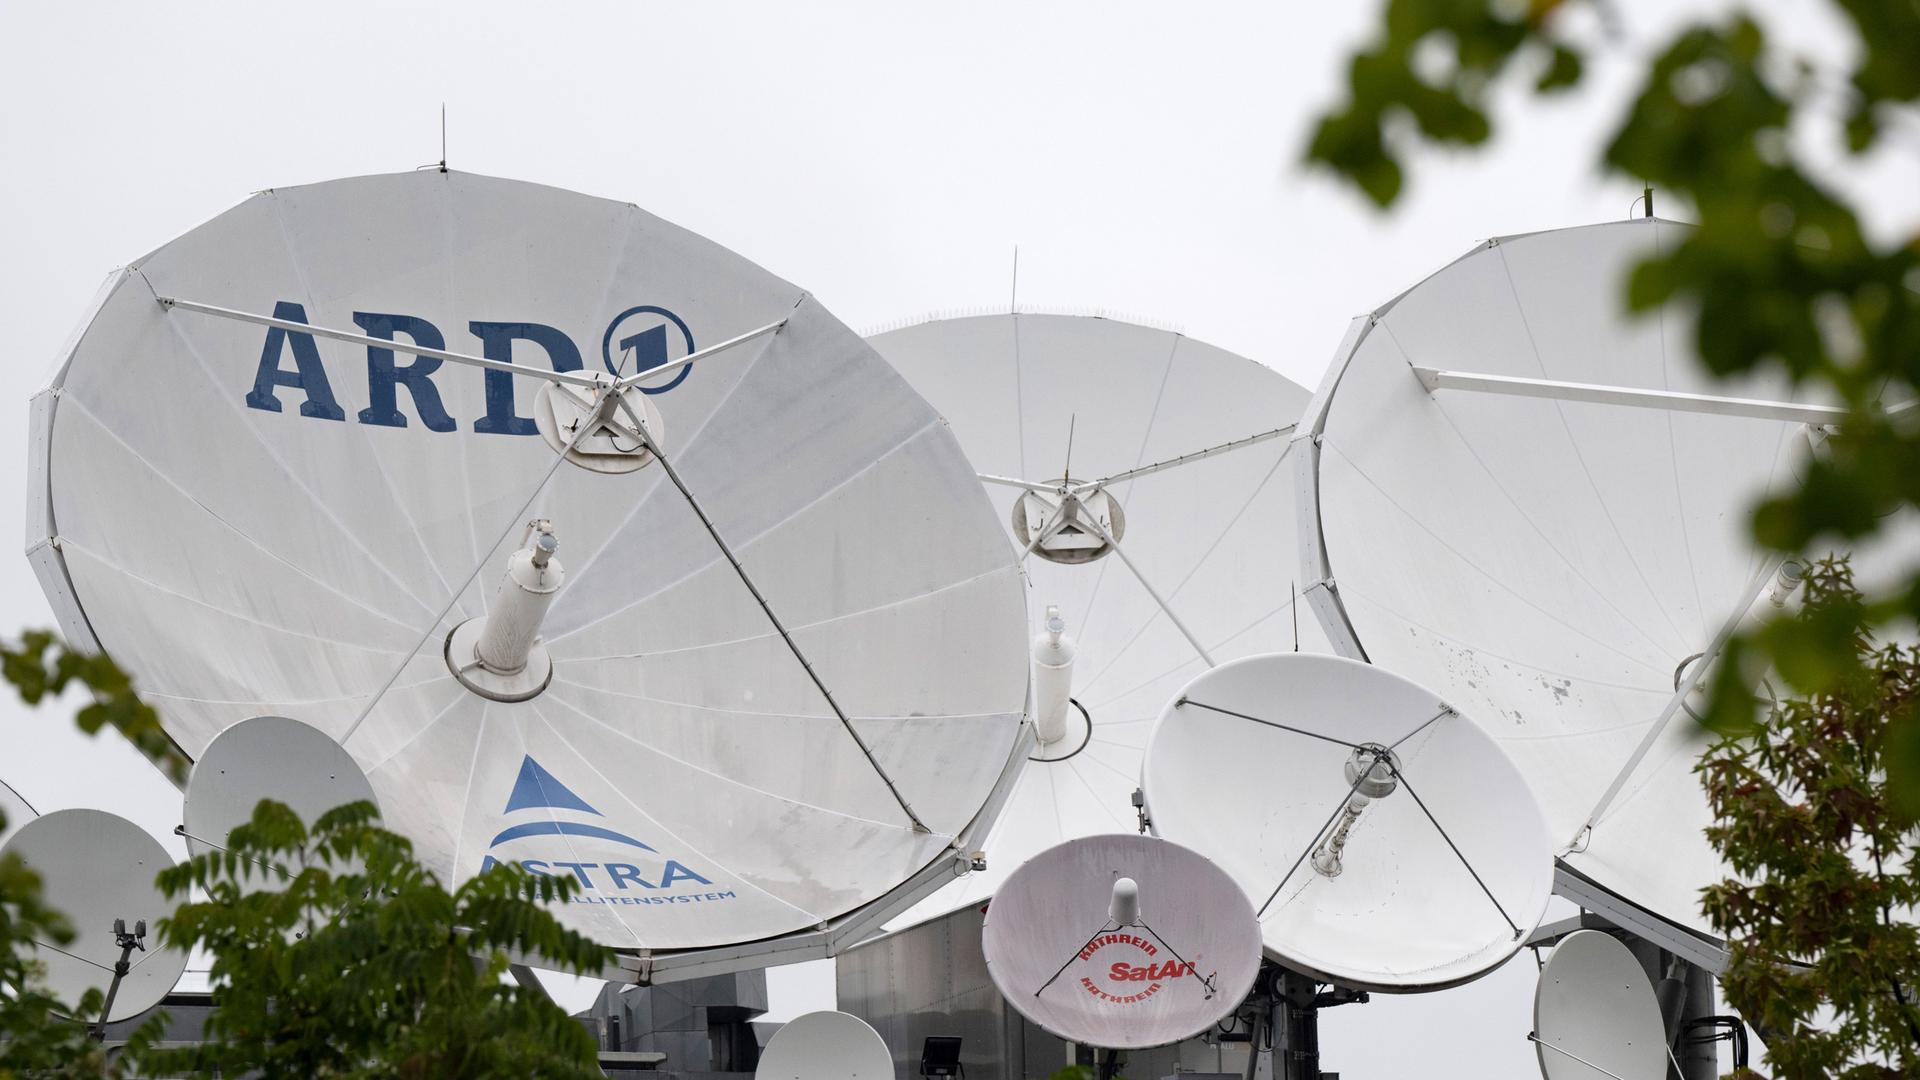 Satellitenschüsseln, eine davon mit ARD-Logo, befinden sich auf dem Gebäude der Zentrale des Hessischen Rundfunks (hr) am Dornbusch. Der hr ist Teil der ARD und die öffentlich-rechtliche Landesrundfunkanstalt in und für Hessen.